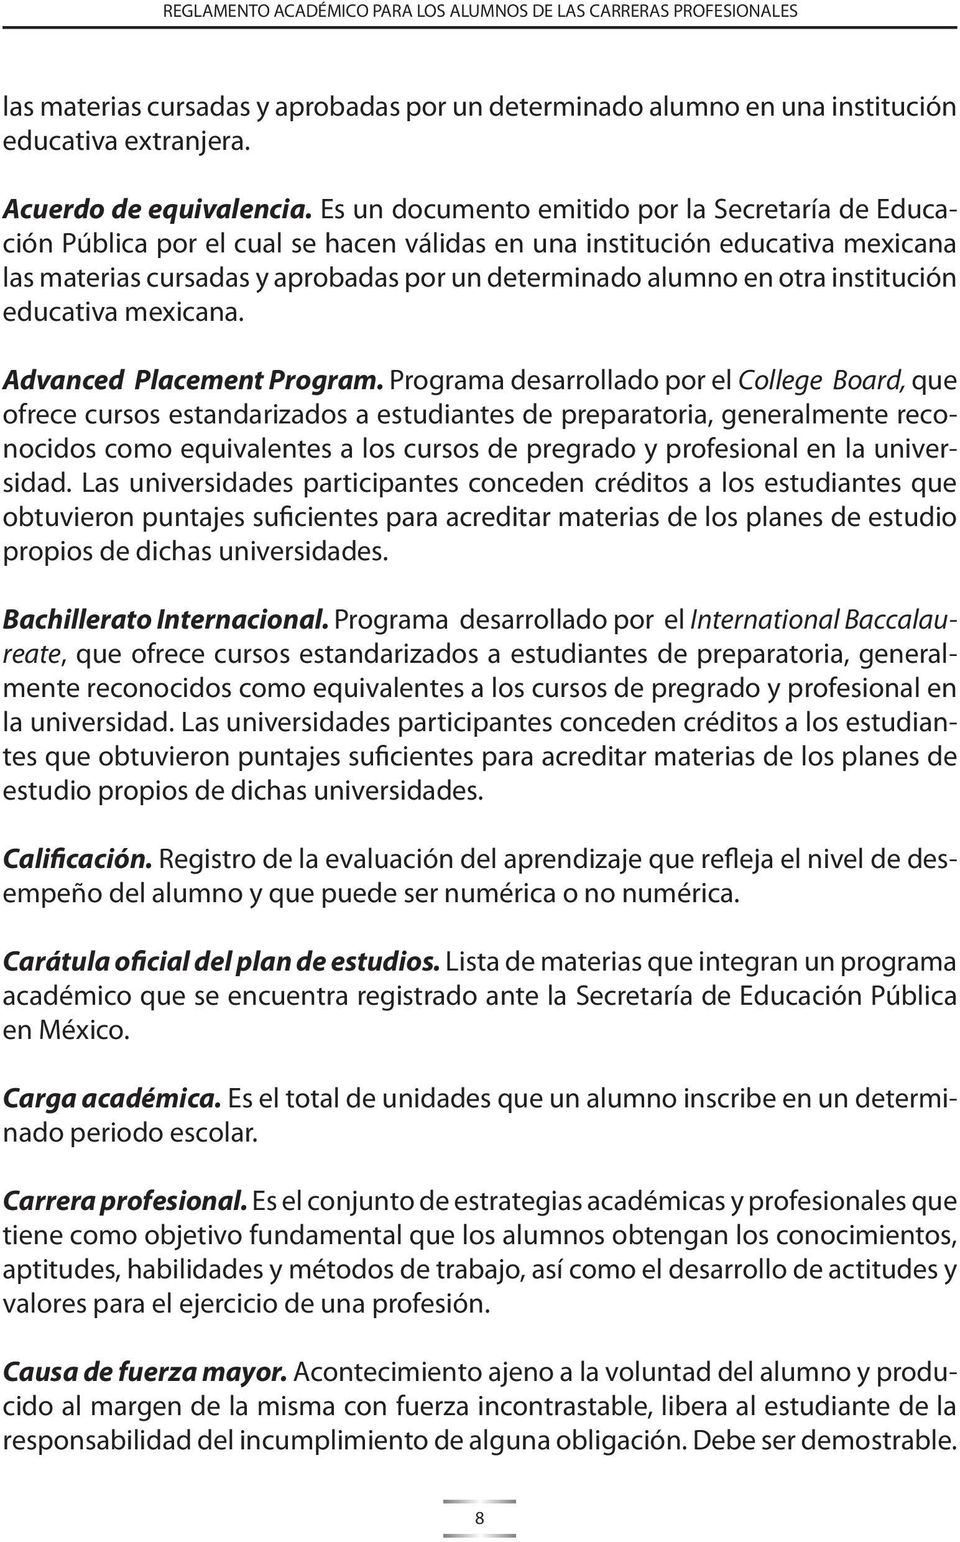 institución educativa mexicana. Advanced Placement Program.